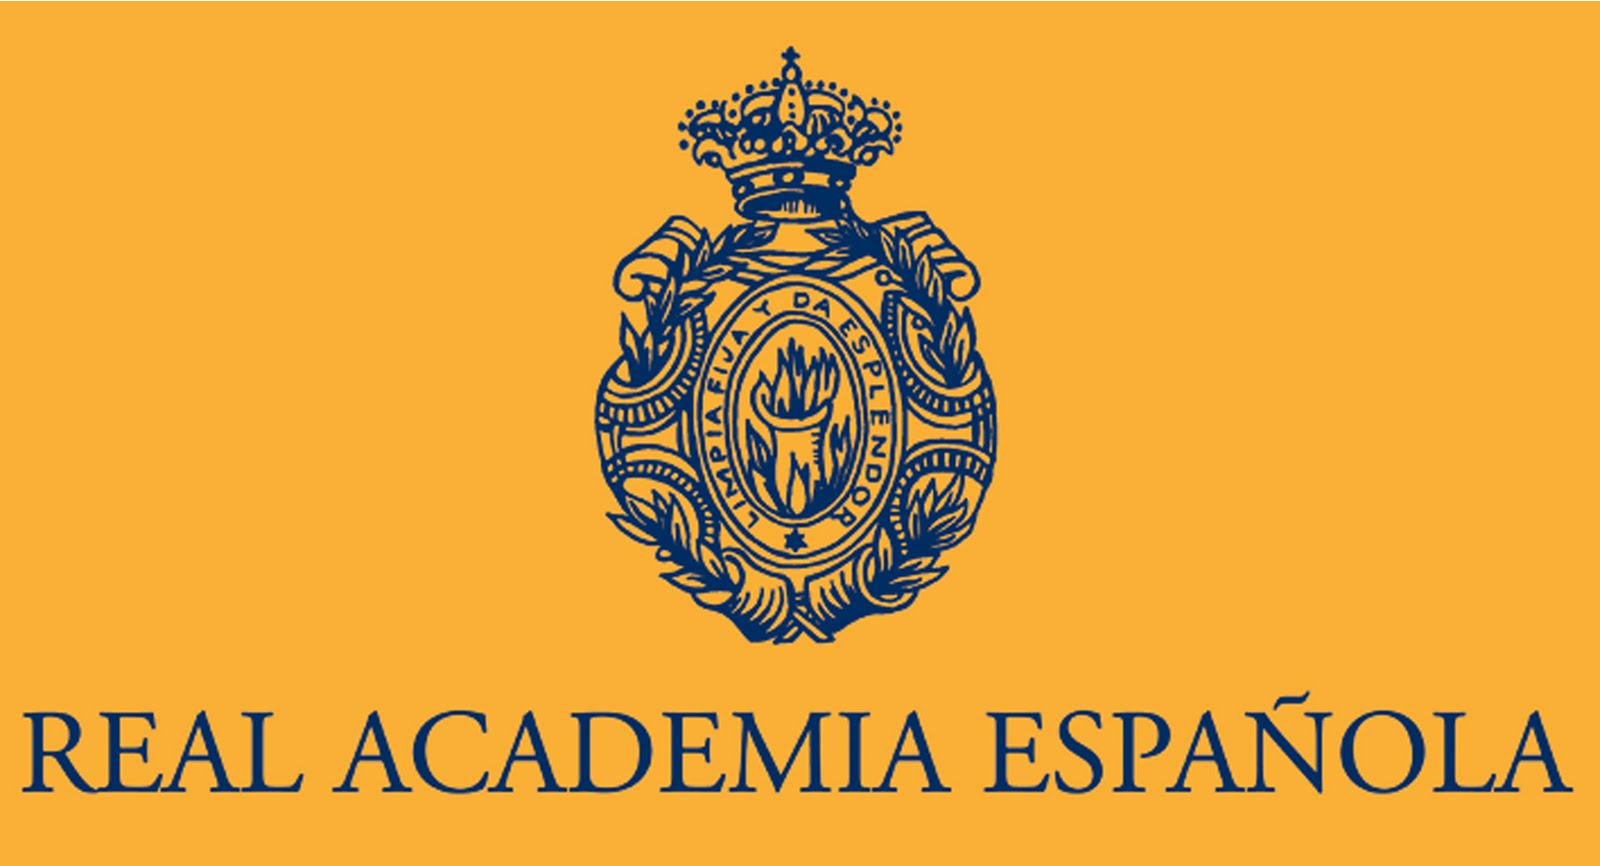 Real Academia Española - #PalabraDelDía